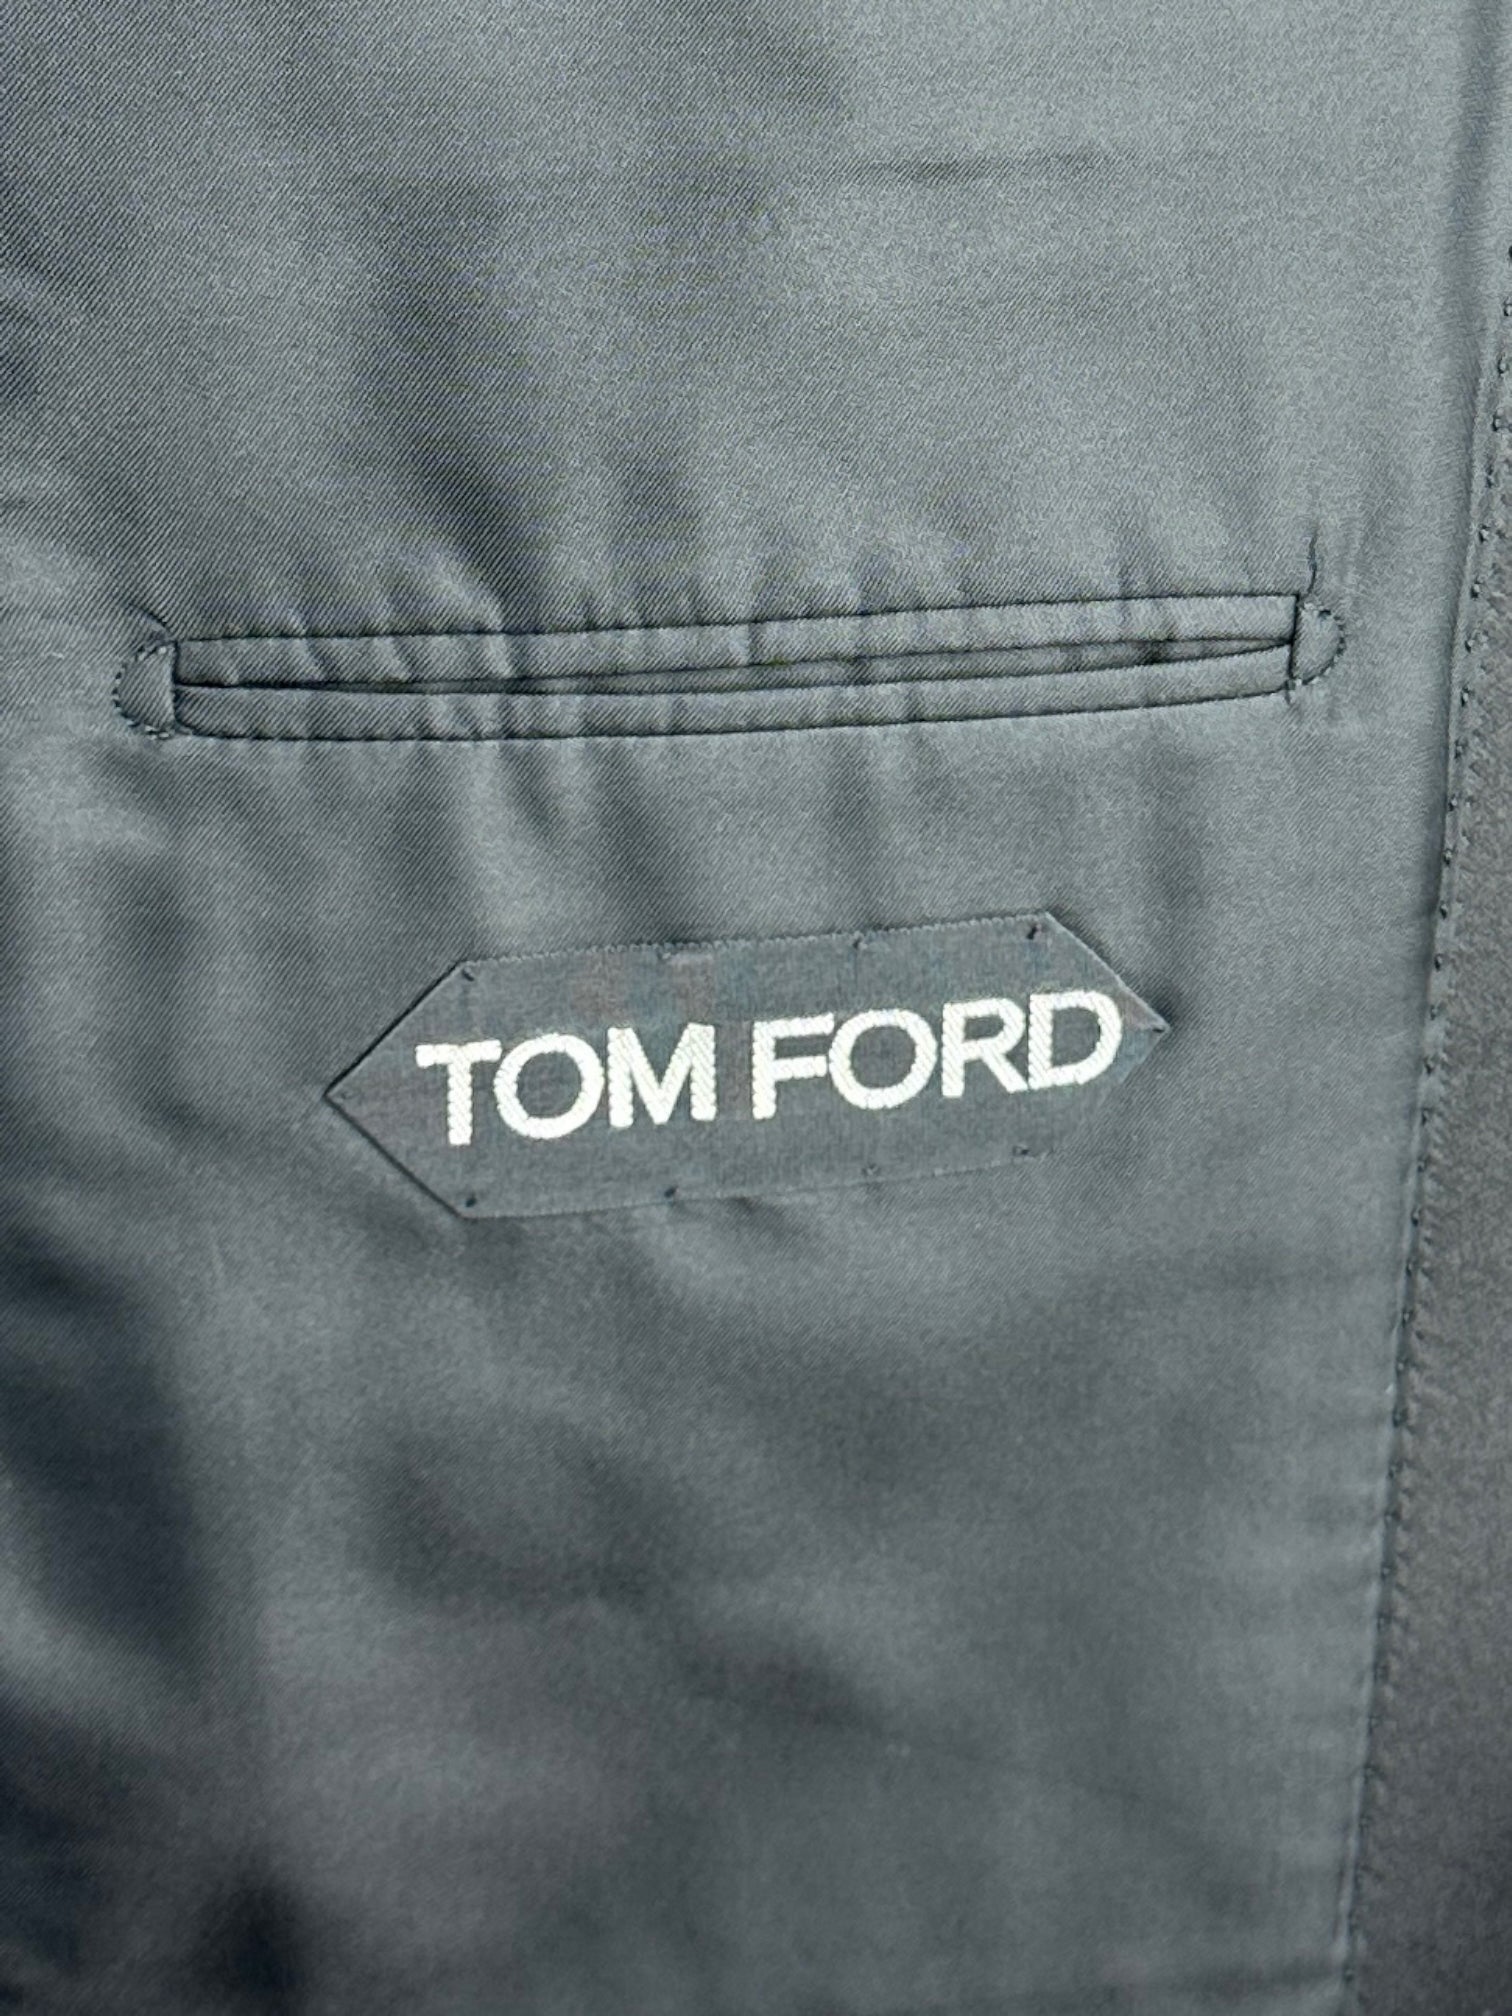 Tom Ford Black Tuxedo